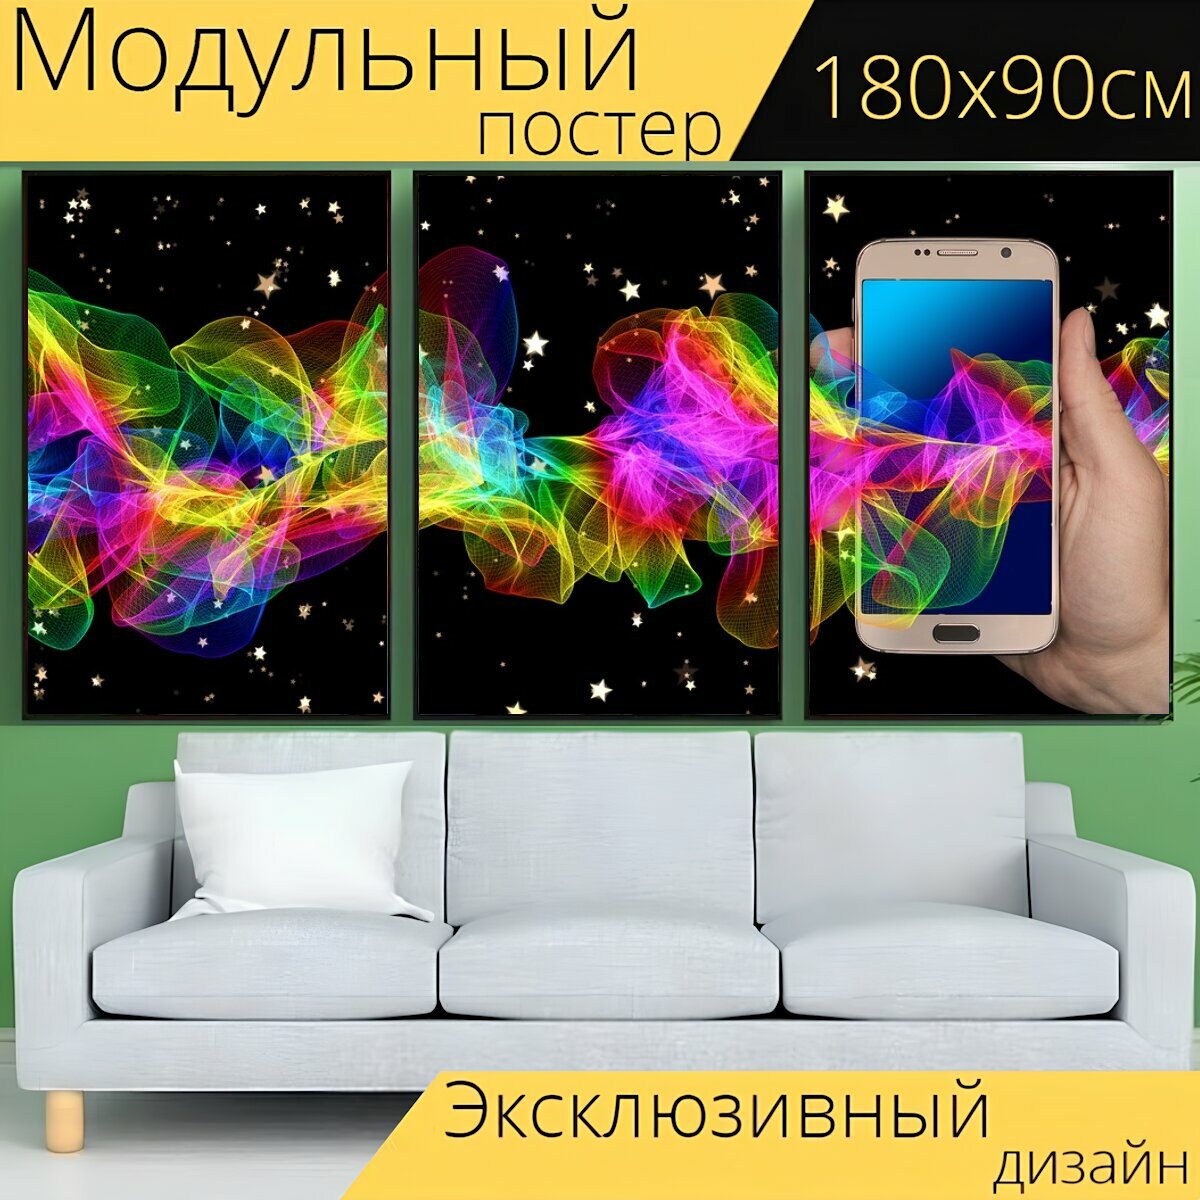 Модульный постер "Мобильный, смартфон, рука" 180 x 90 см. для интерьера